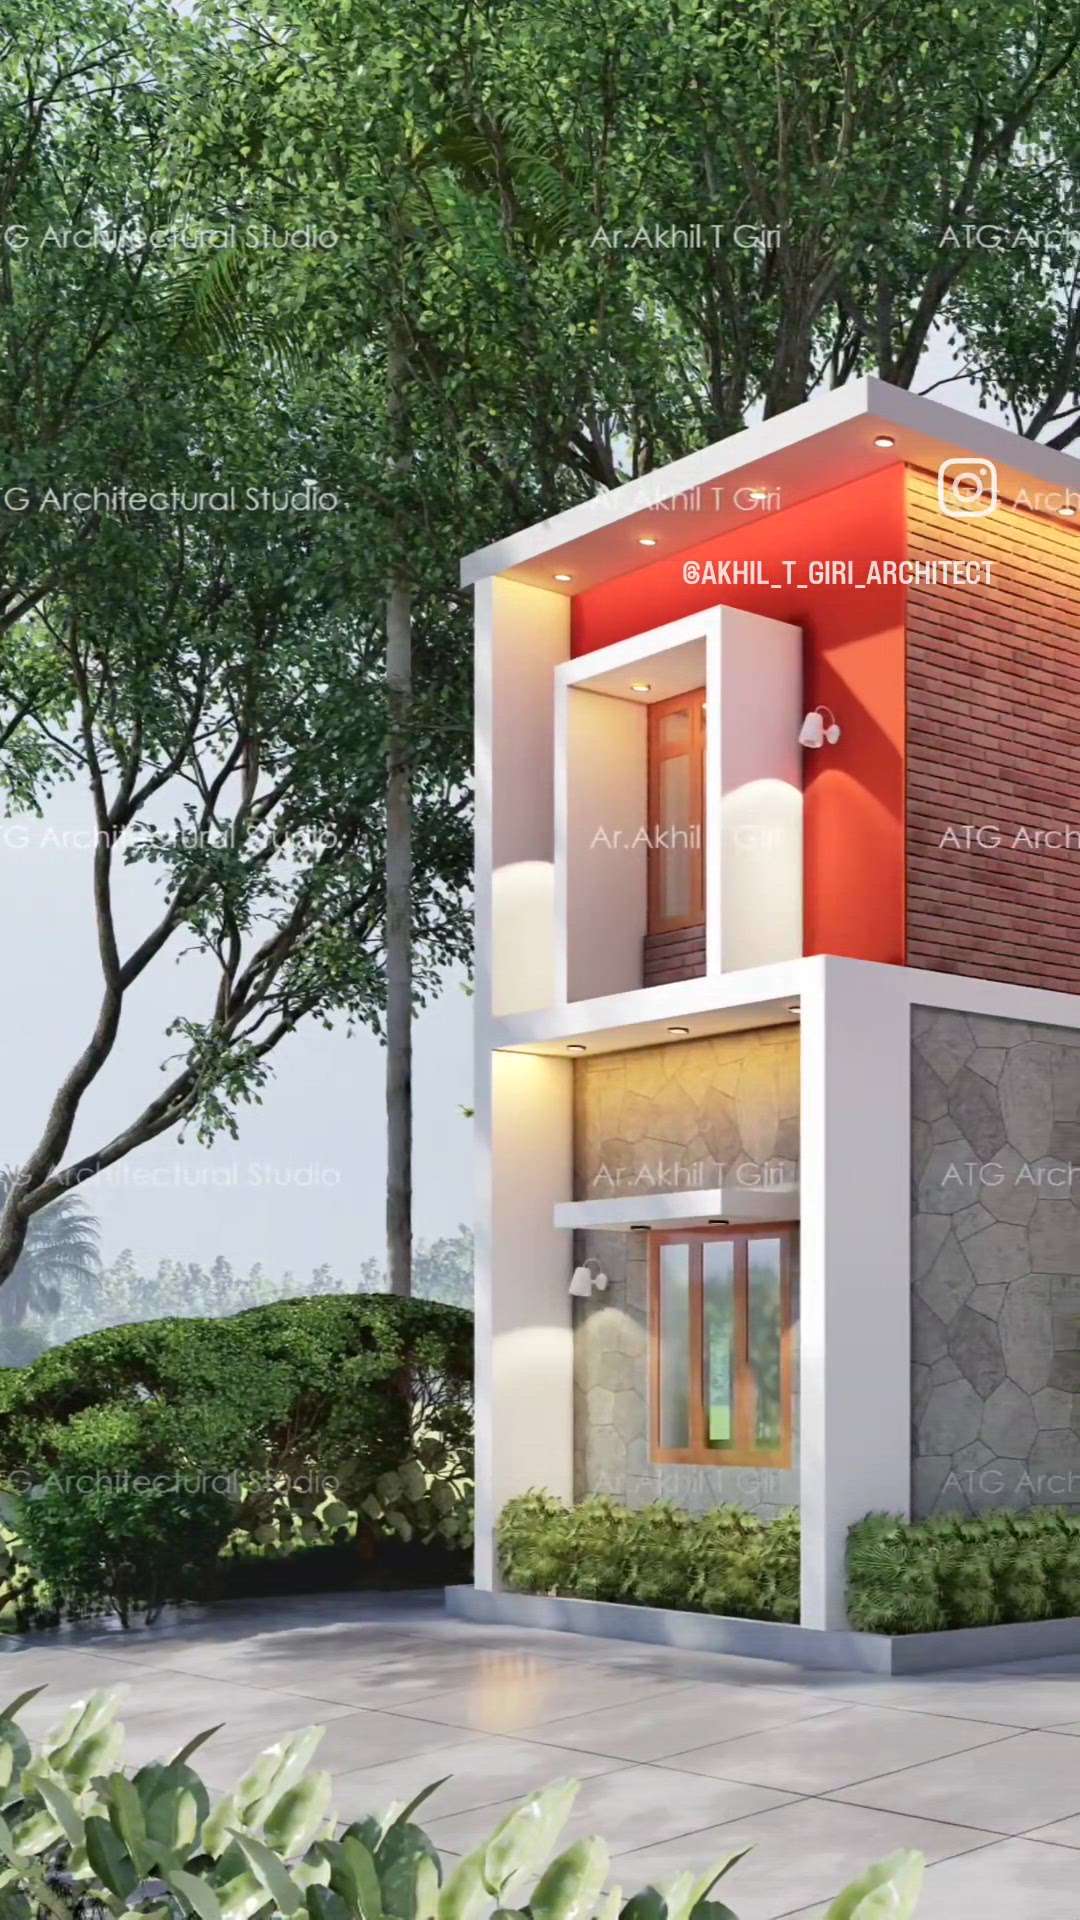 ഒരു കണ്ടമ്പററി വീട് ഡിസൈൻ ചെയ്തപ്പോൾ.....!
Finalised Design of the Proposed Residence for Maneesha- Pratheesh 
Client: @maneeshapretheesh
Area : 1400sq.ft
Location : Iringavoor, Malappuram, Kerala
The client requirement was to build a conventional contemporary style house with in a linear plot.
..
..
#budgetedhomes#kerala_architecture
#Home🏡 #exteriordesign #architects_of_malappuram 
#contemporarydesign#kolo #HomeDesign #HomeDecor 
#construction#keralabuildingplanners#architecture #